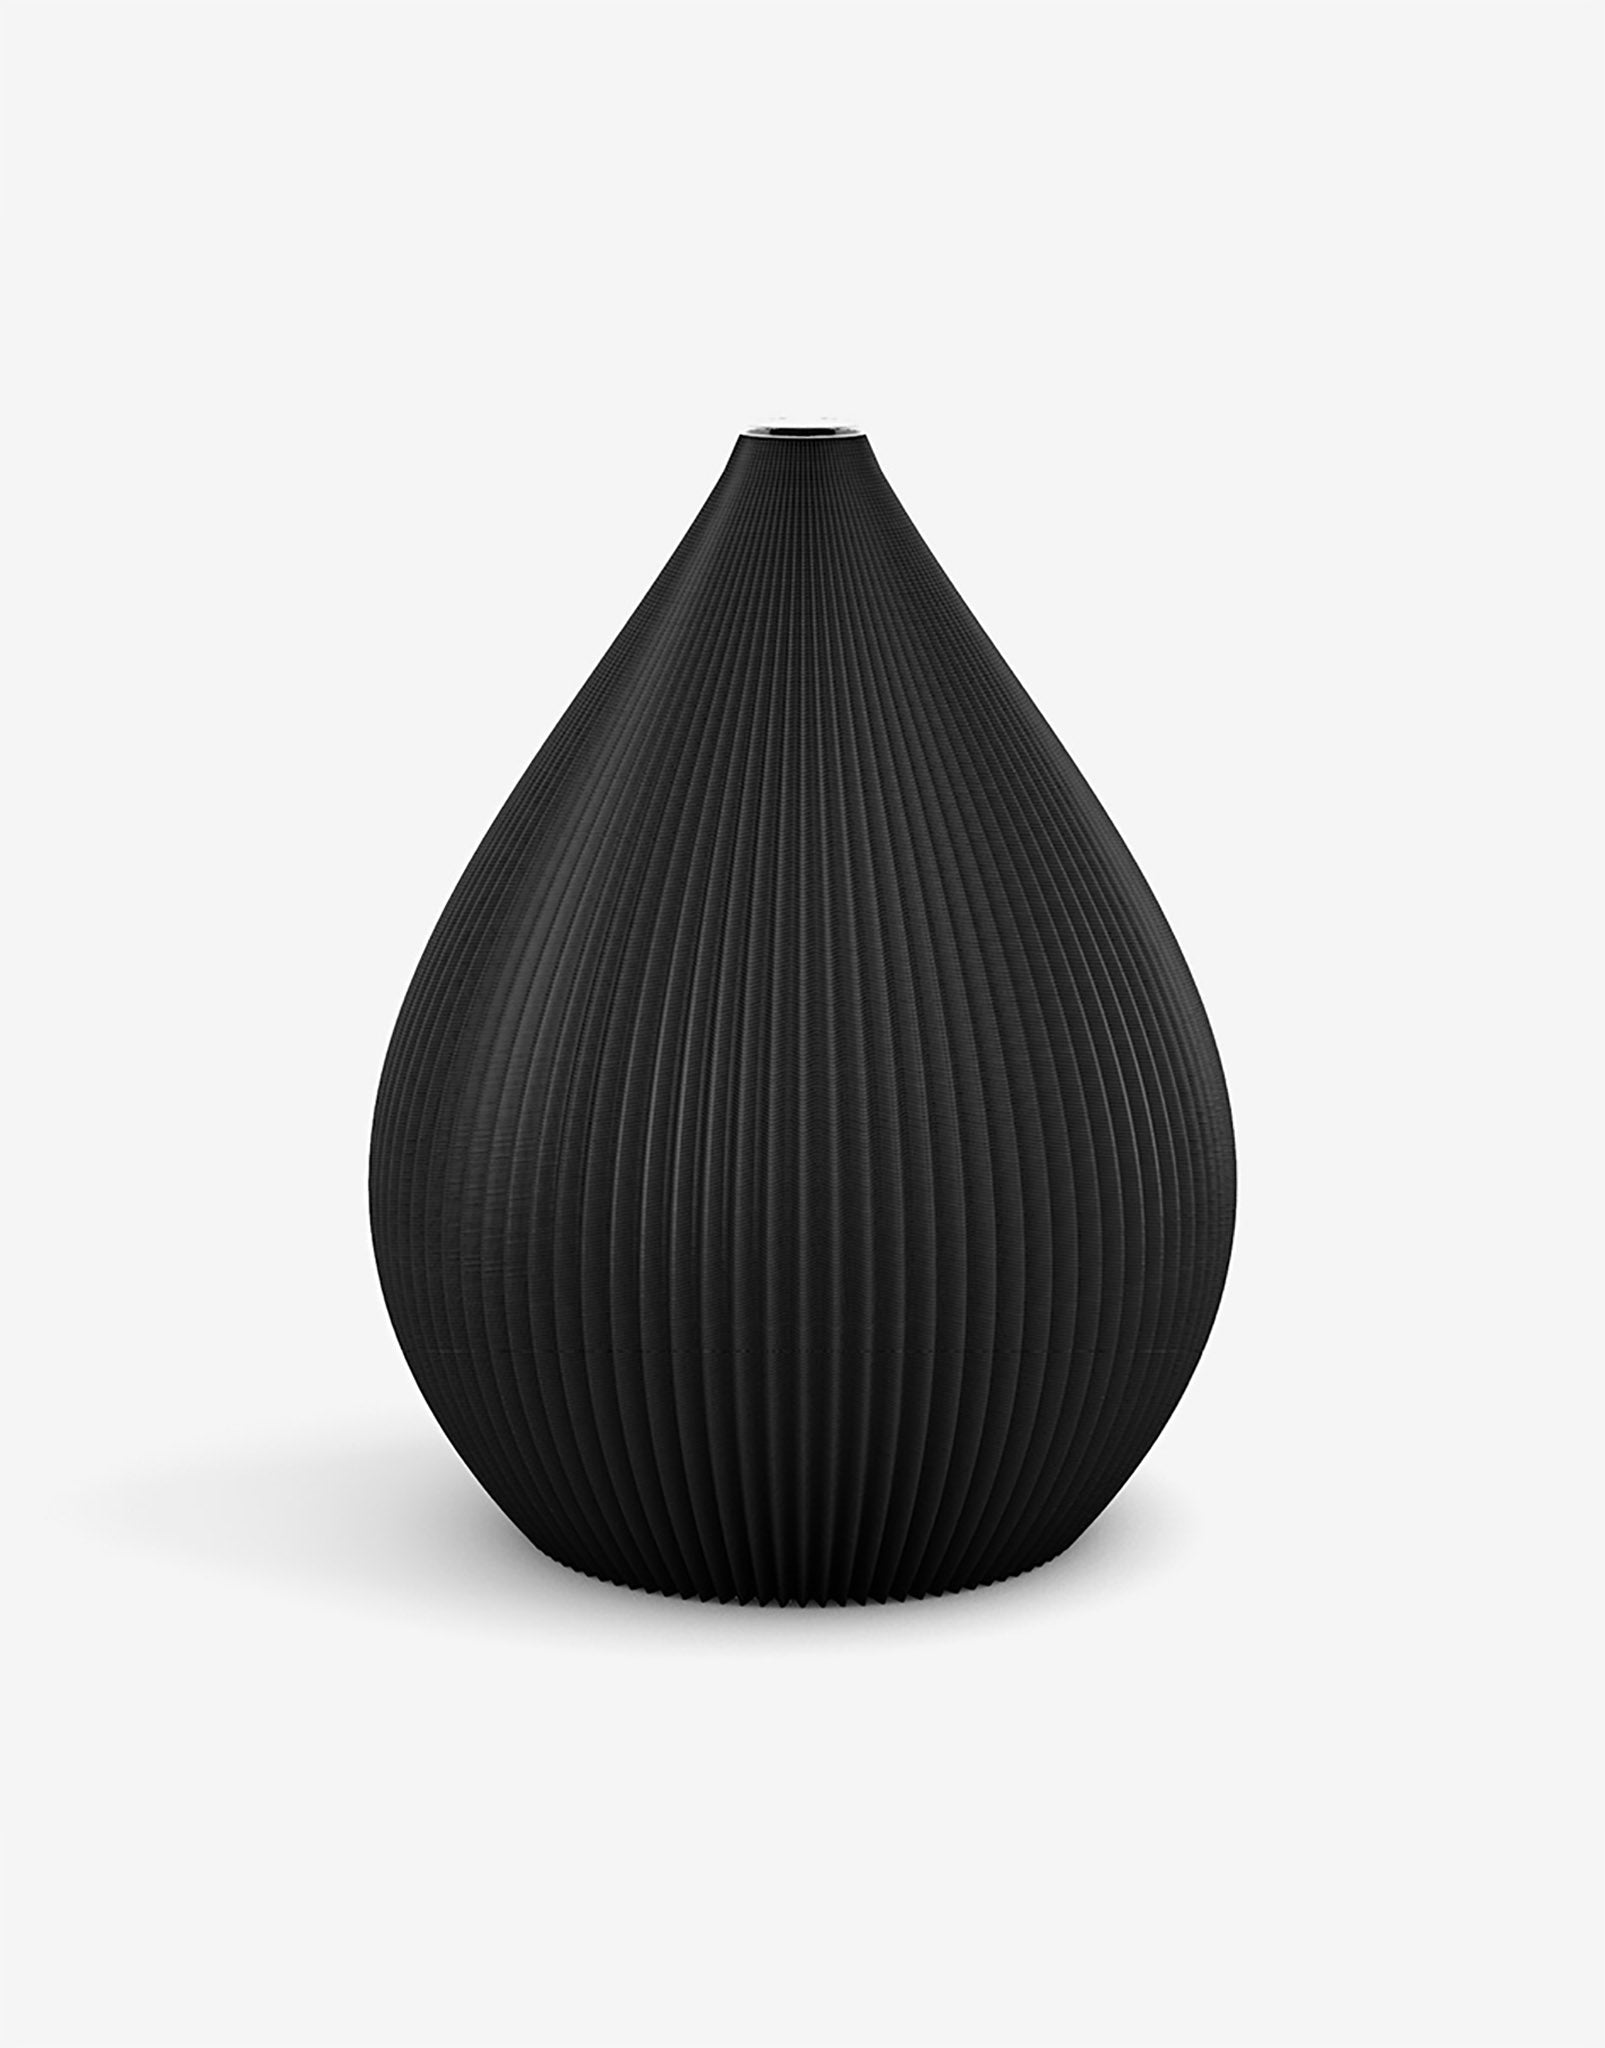 Ovale 3D Druck Kunststoff Vase Balloon von Recozy mit Glaseinsatz, Farbe: Midnight Black, Größe: M